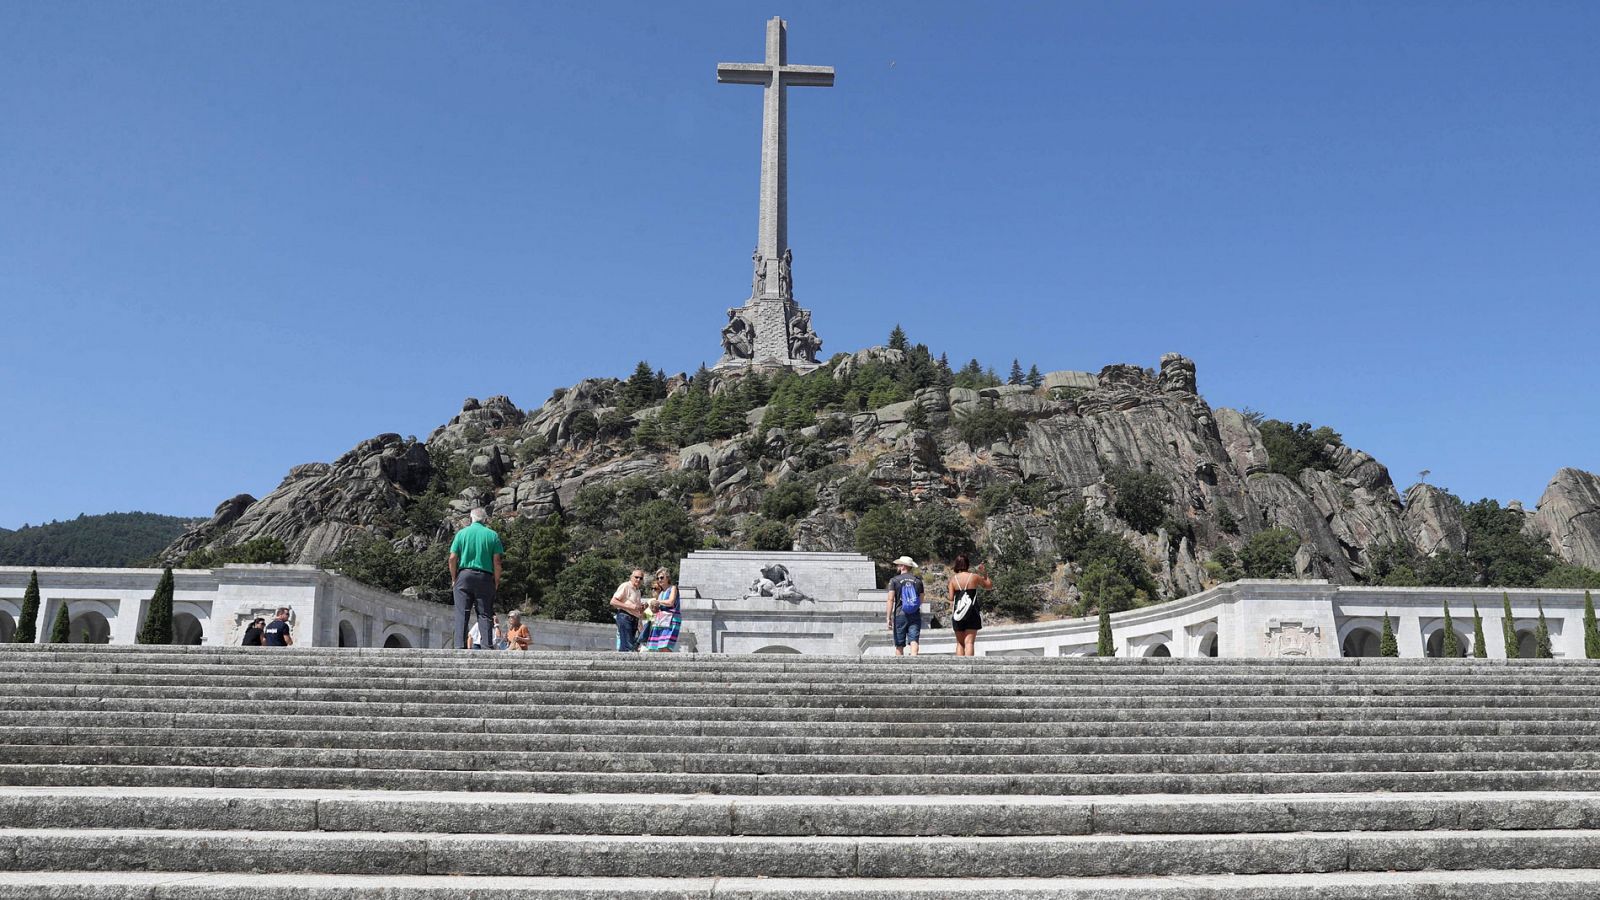 El Gobierno aprobó el pasado 24 de agosto la exhumación de los restos de Franco del Valle de los Caídos